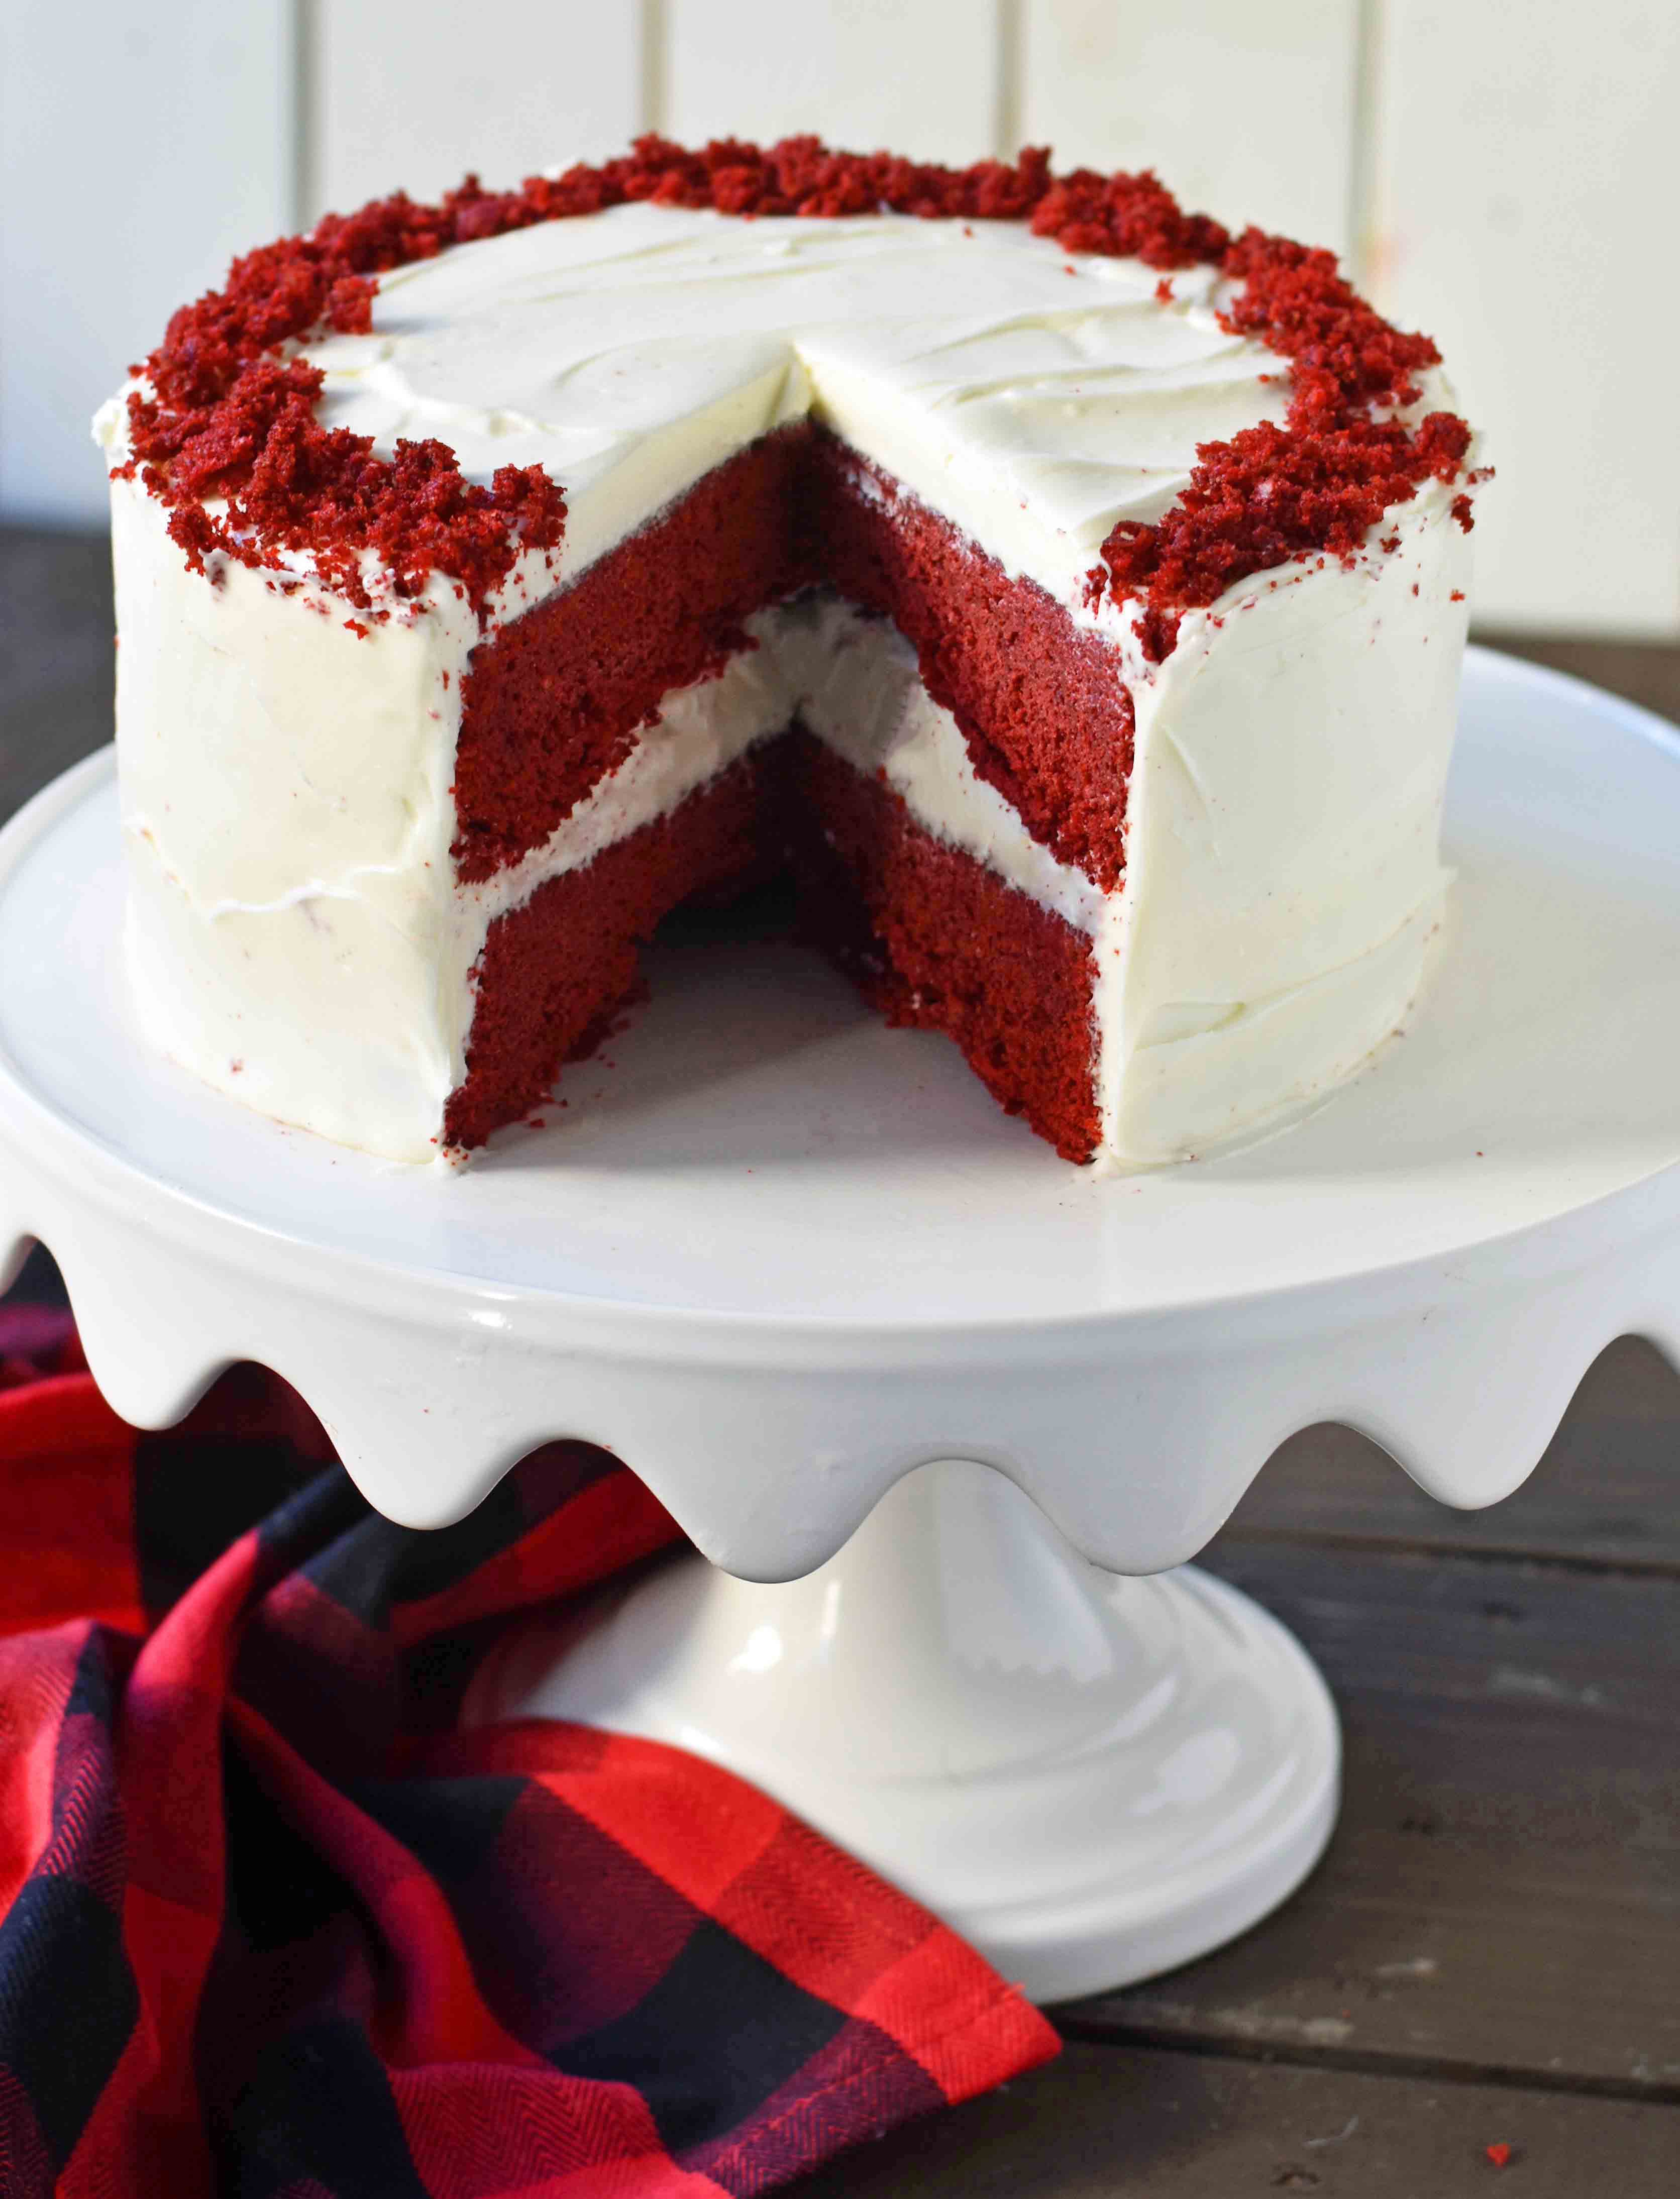 Best Icing For Red Velvet Cake : Best Red Velvet Cake Recipe with Cream ...